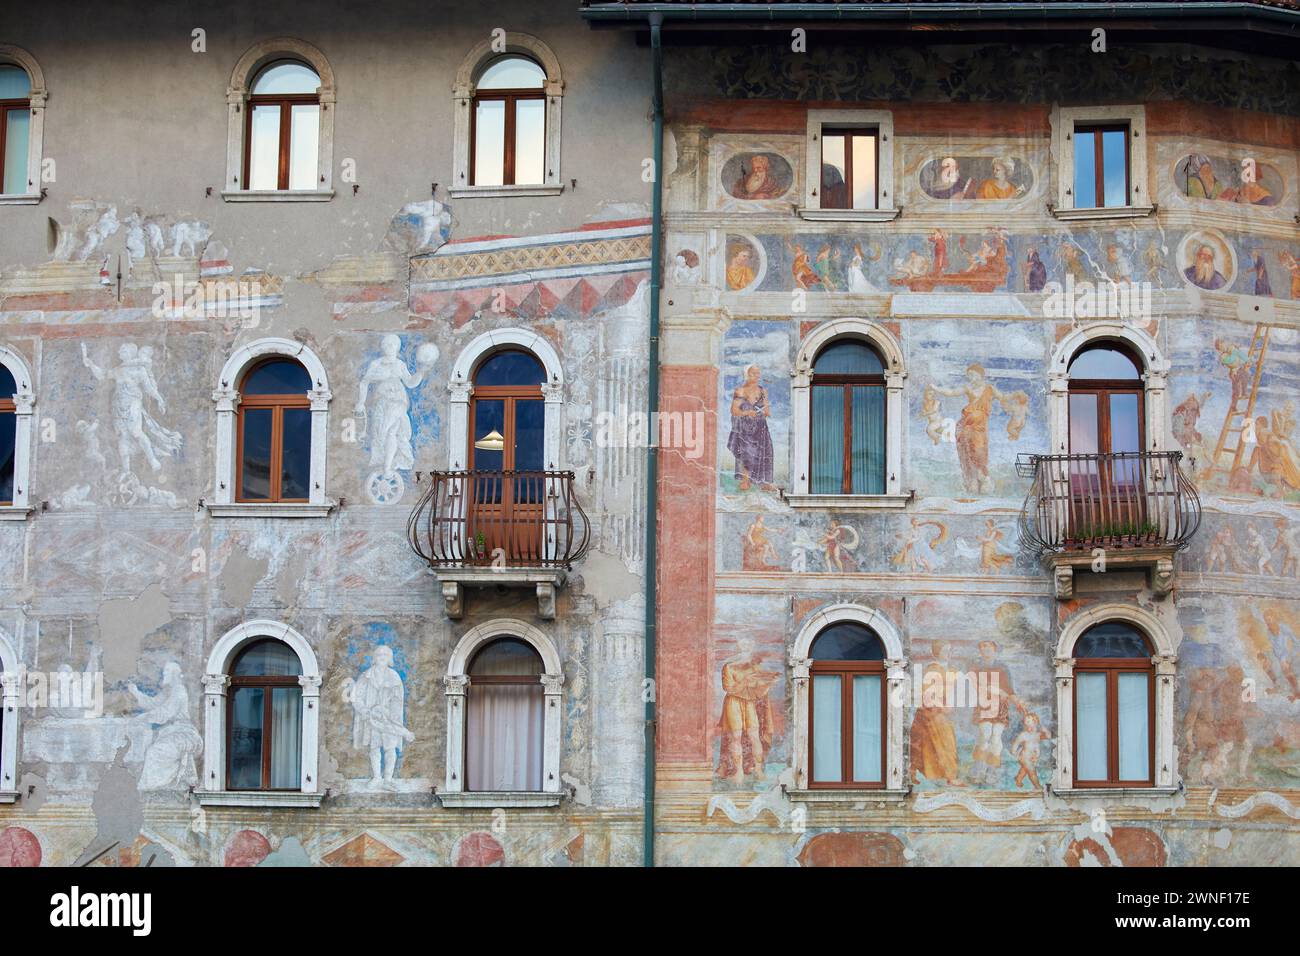 Palais traditionnels peints à trente, Trentin Haut-Adige, Italie Banque D'Images